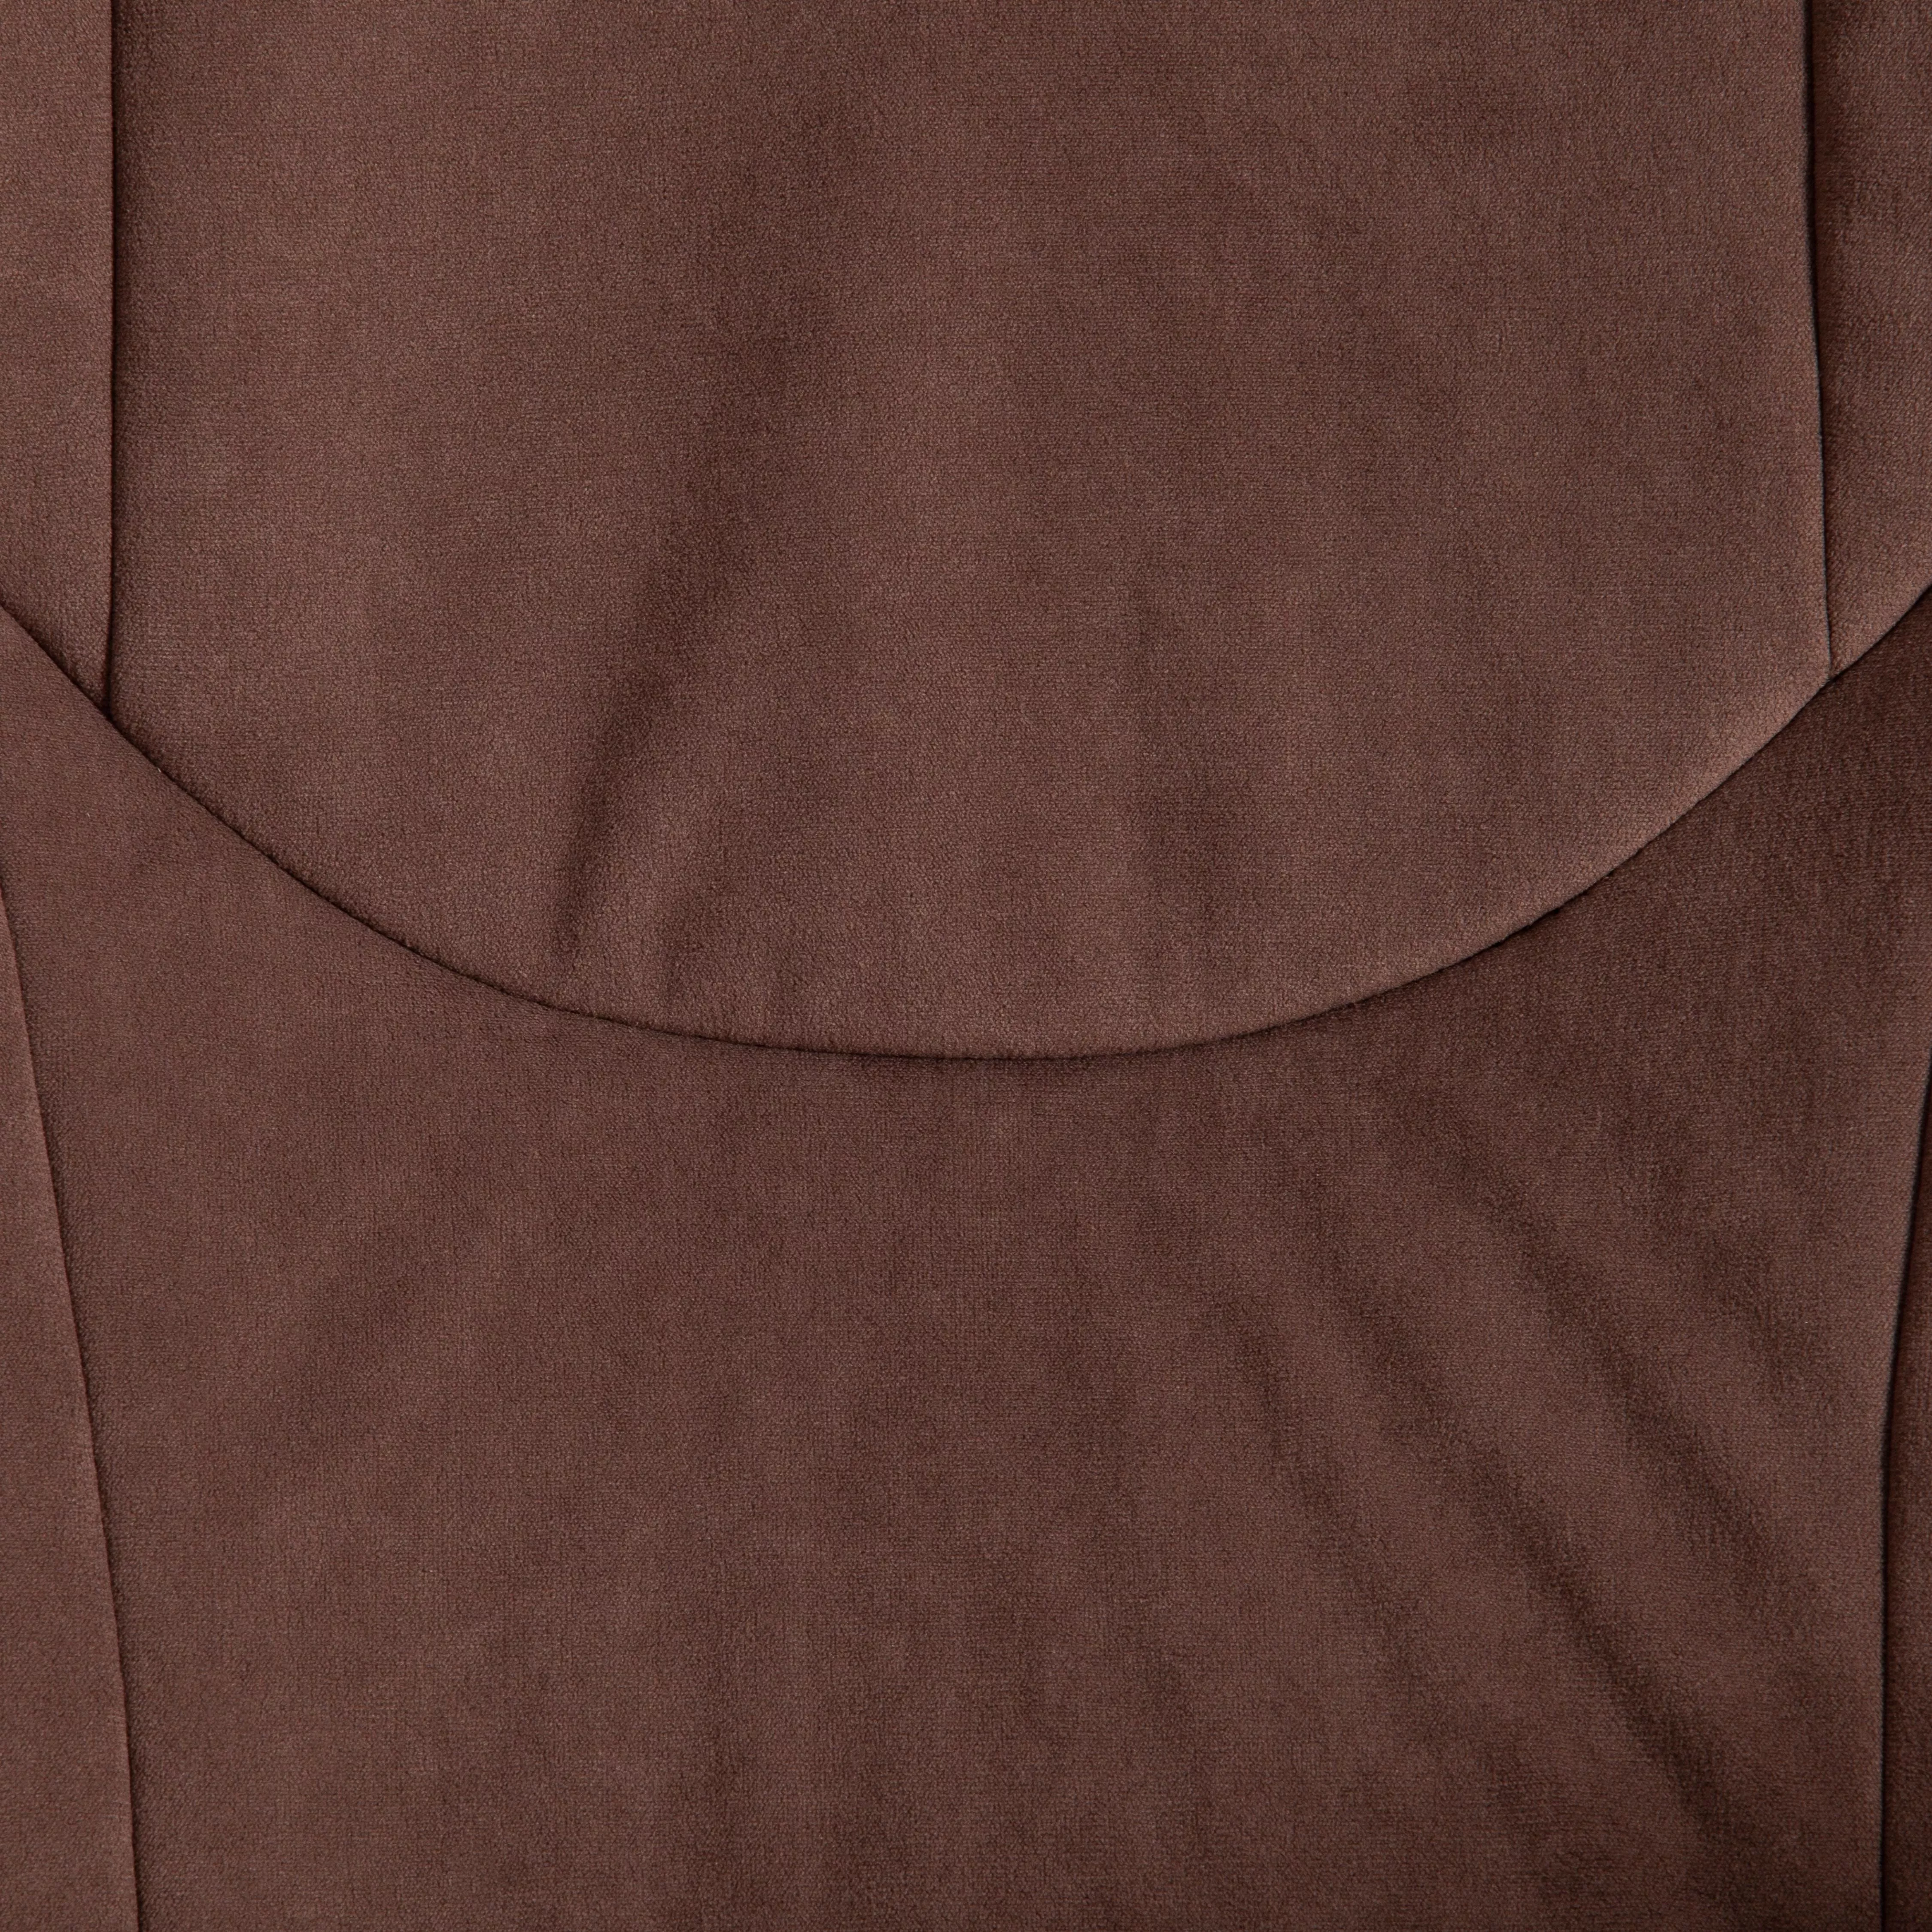 Кресло COMFORT LT (22) ткань коричневый